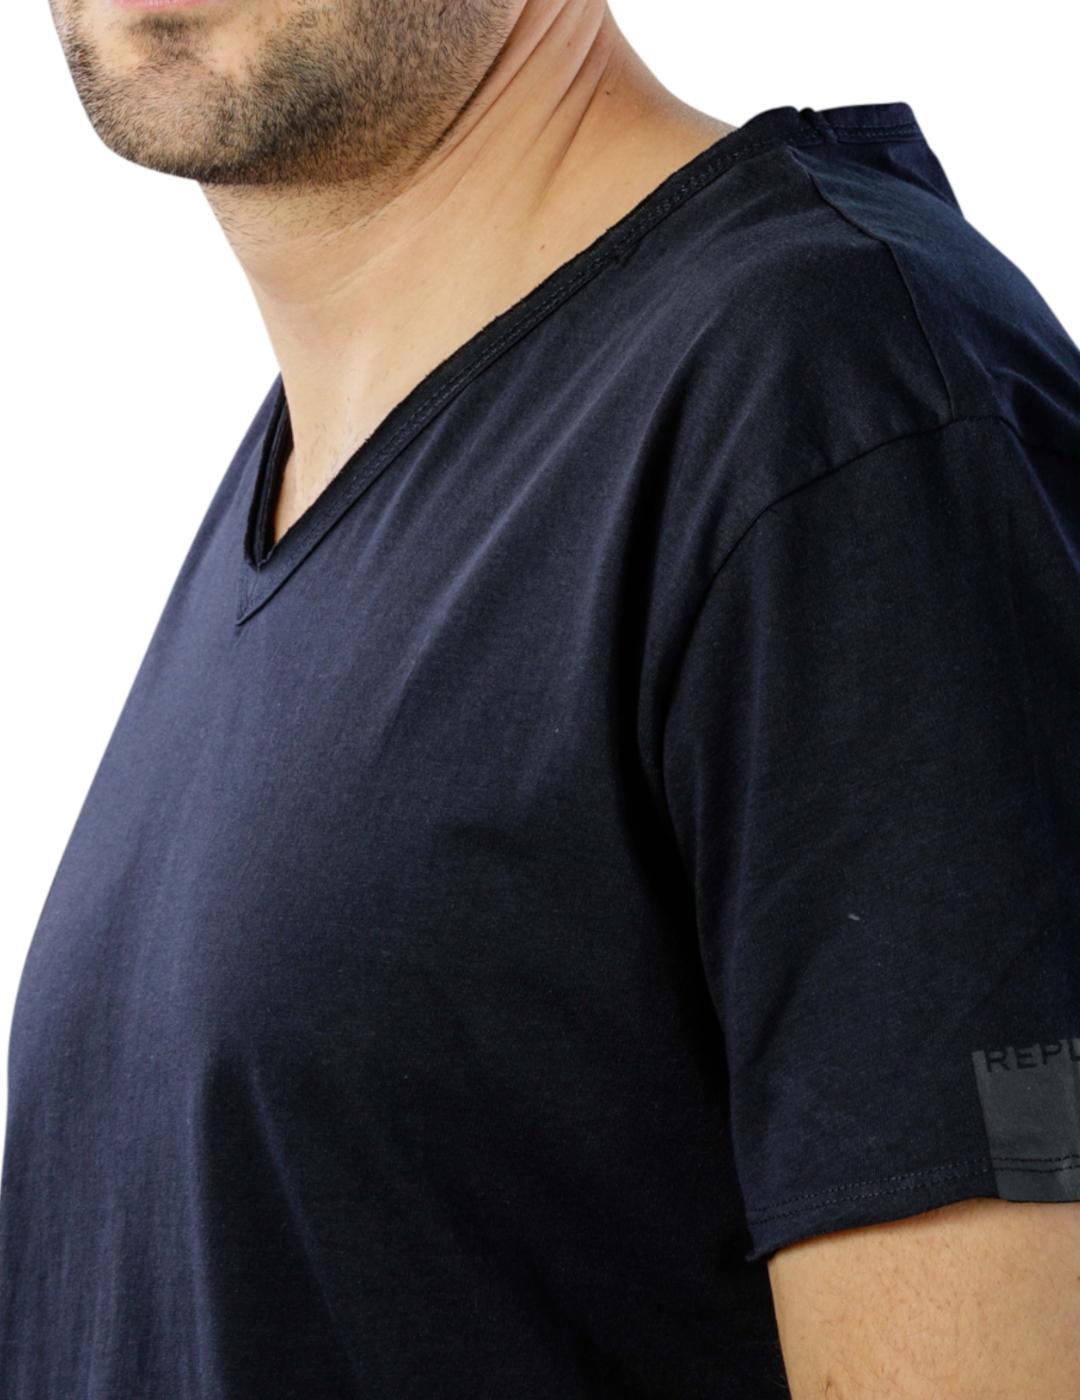 Camiseta Replay cuello en 'V' en color marino para hombre-y